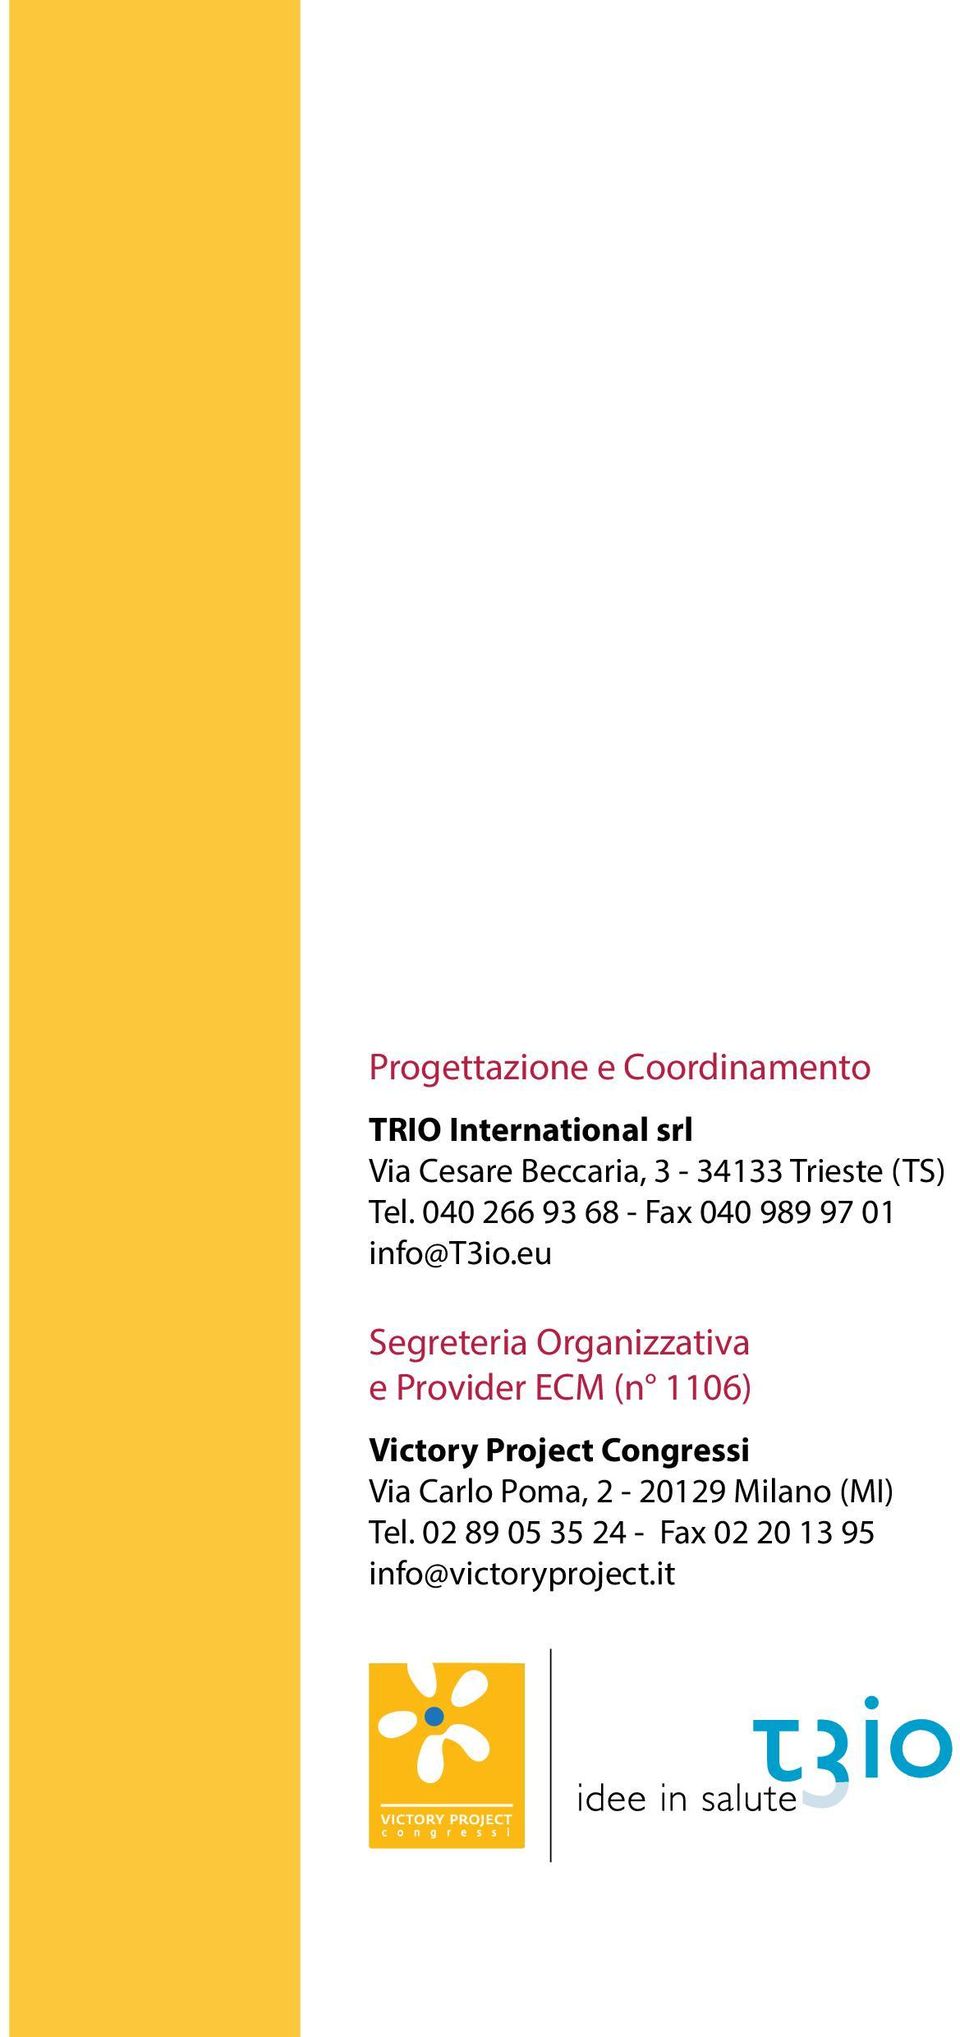 eu Segreteria Organizzativa e Provider ECM (n 1106) Victory Project Congressi